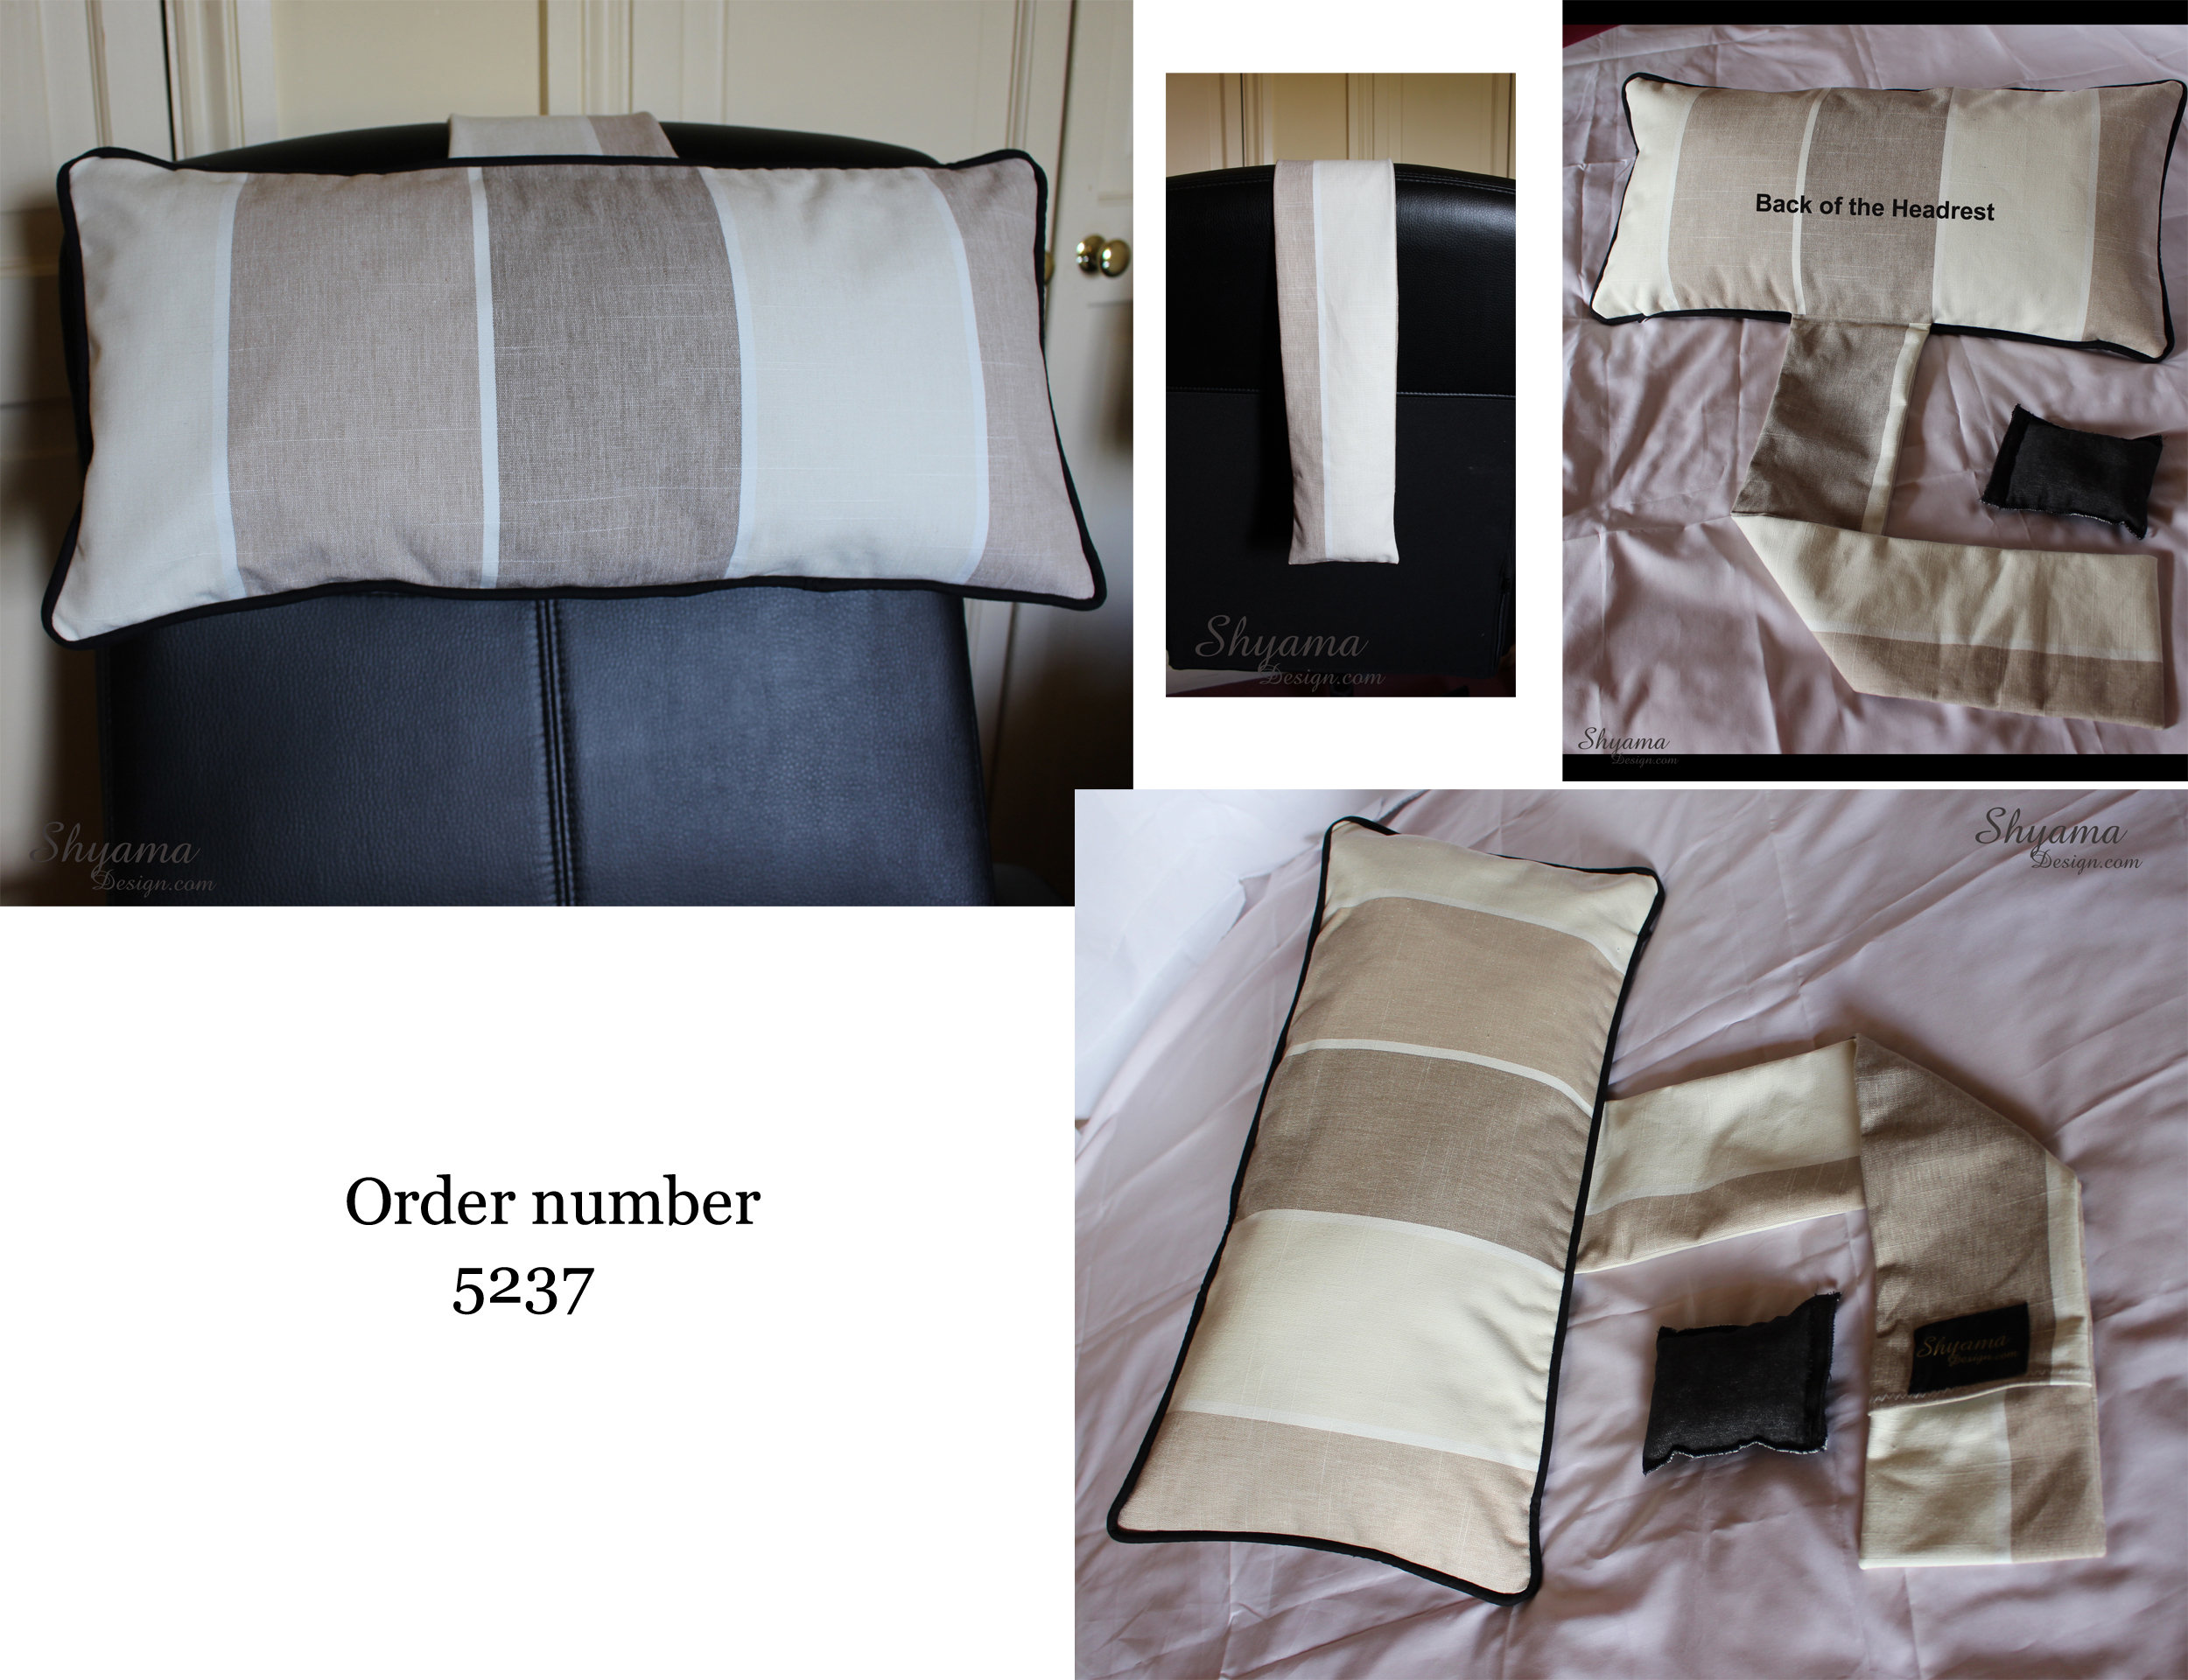 USlixury Neck Pillow for Recliner - Adjustable Recliner Pillow for Neck Support, Customizable Position of Head Pillow As Lumbar Support Pillow